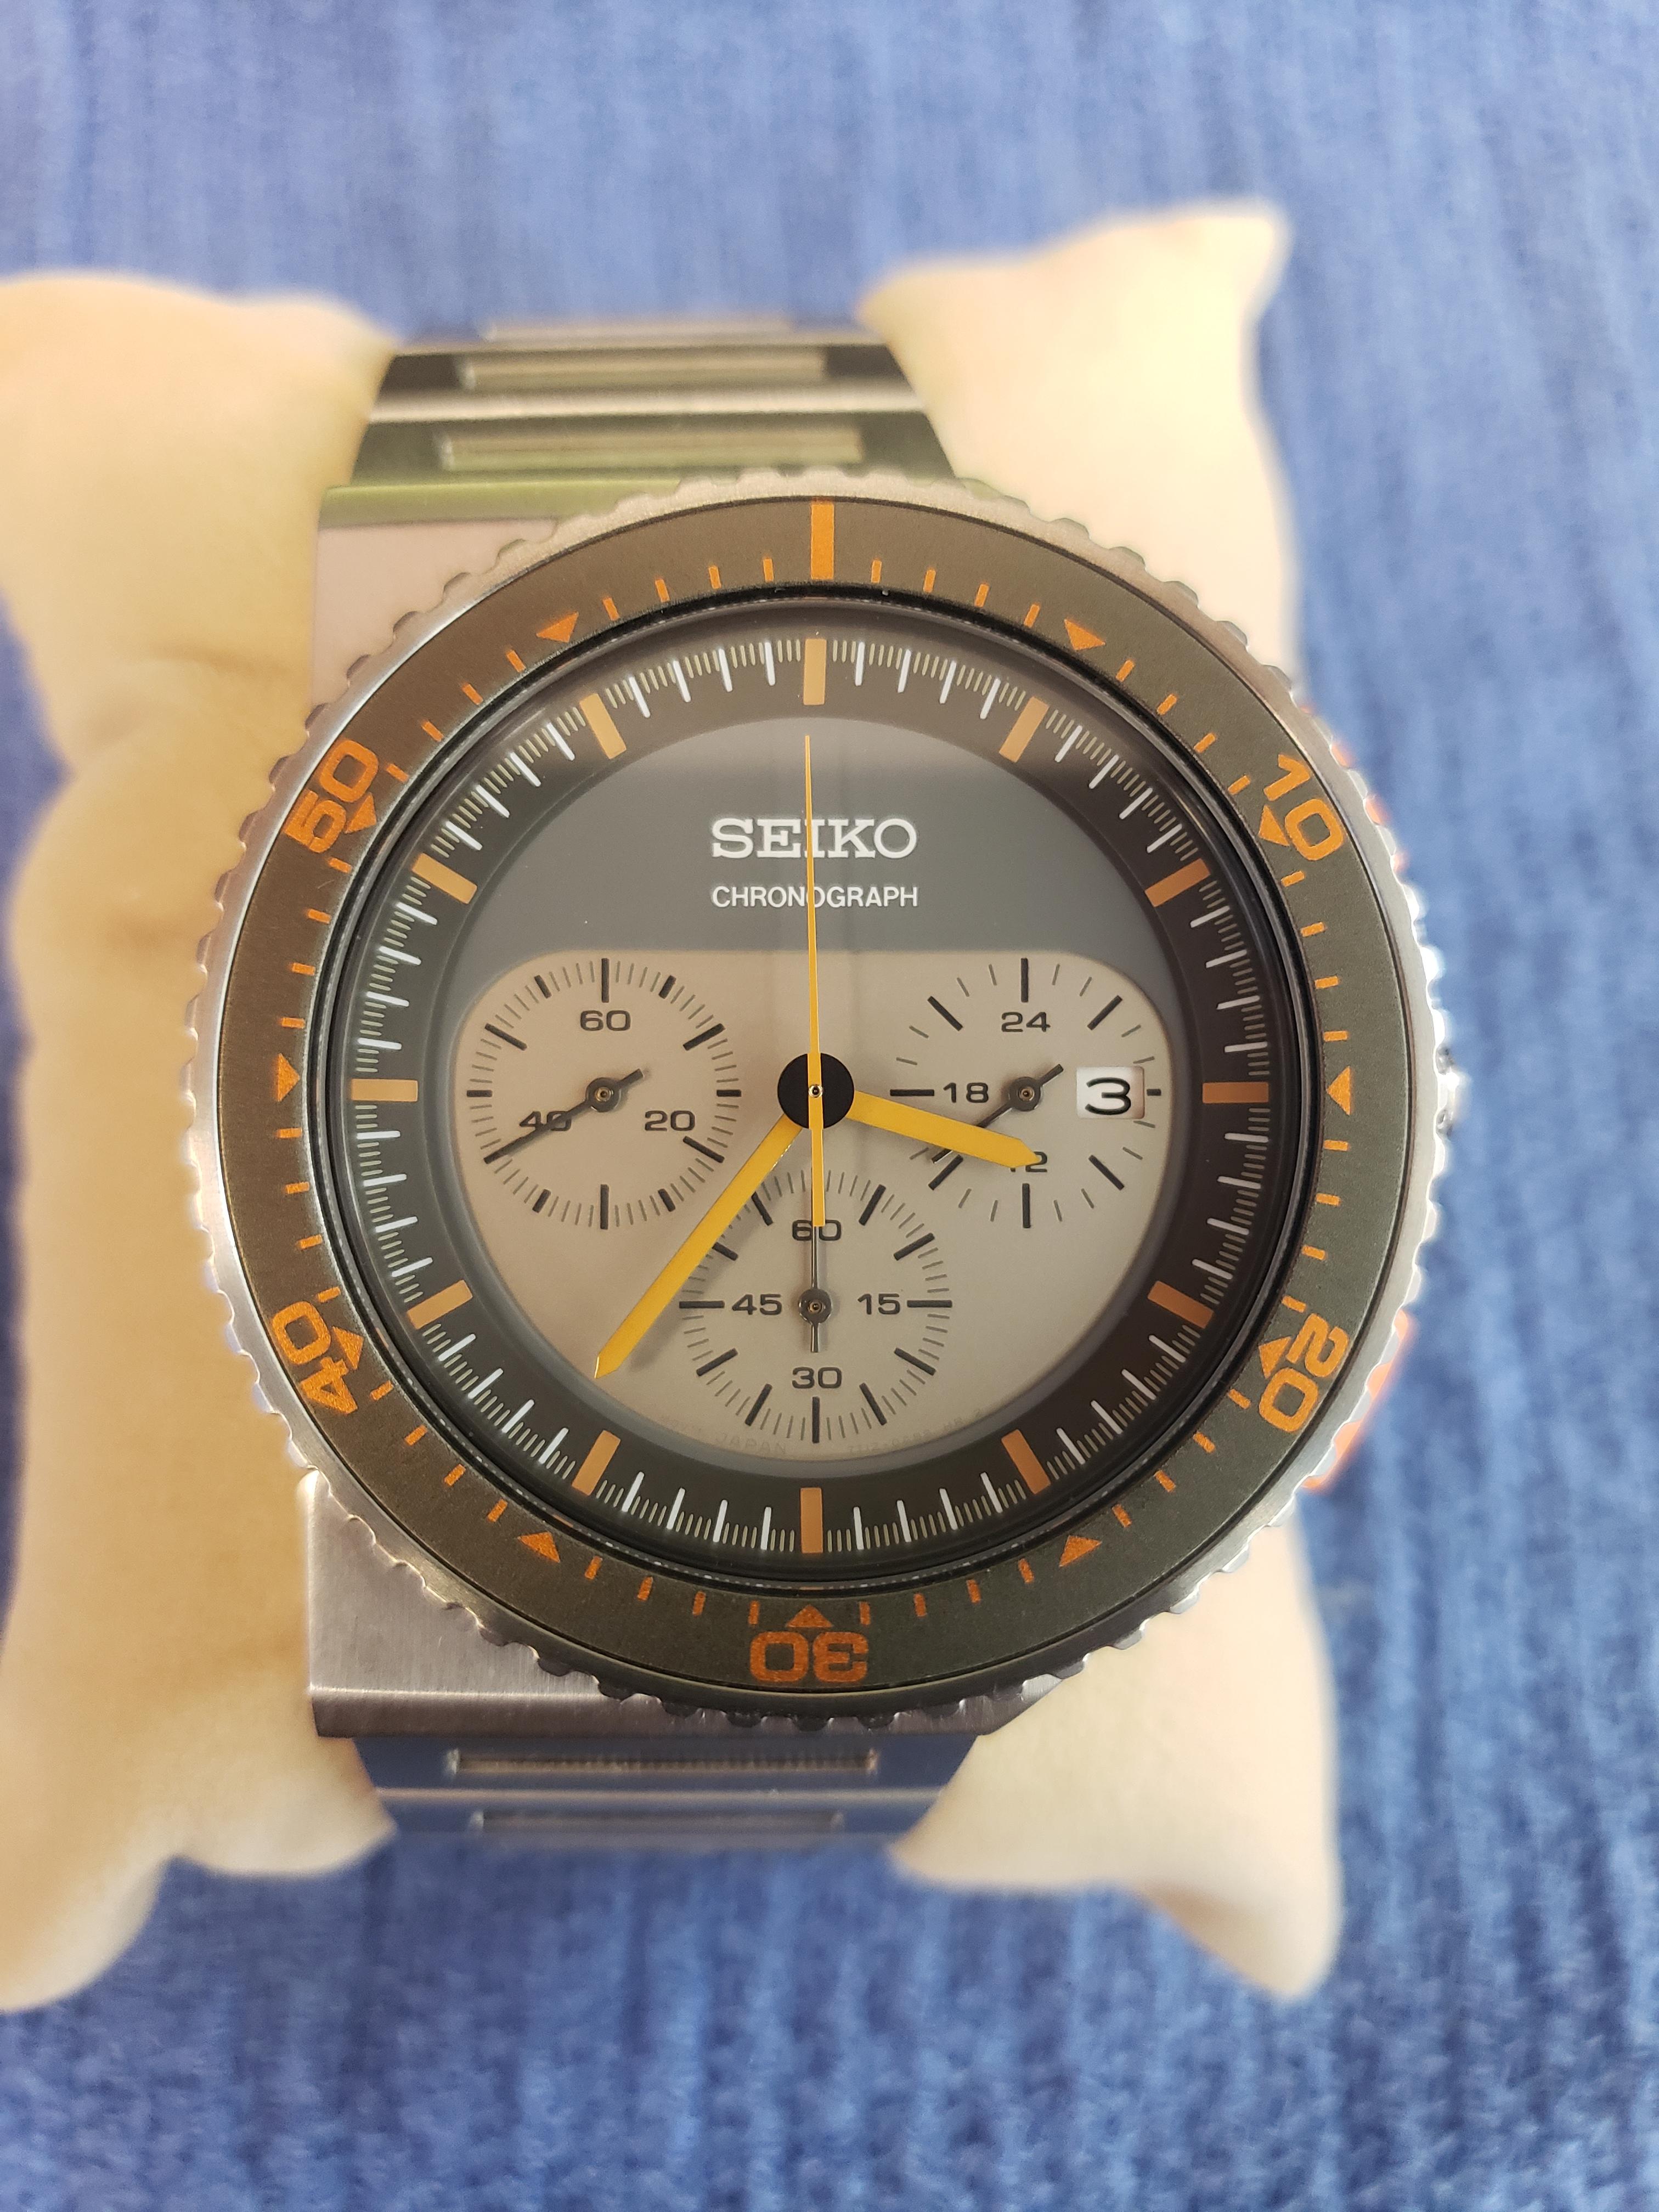 SEIKO] [GIUGIARO] [Limited 2500] [Battery replaced] Seiko